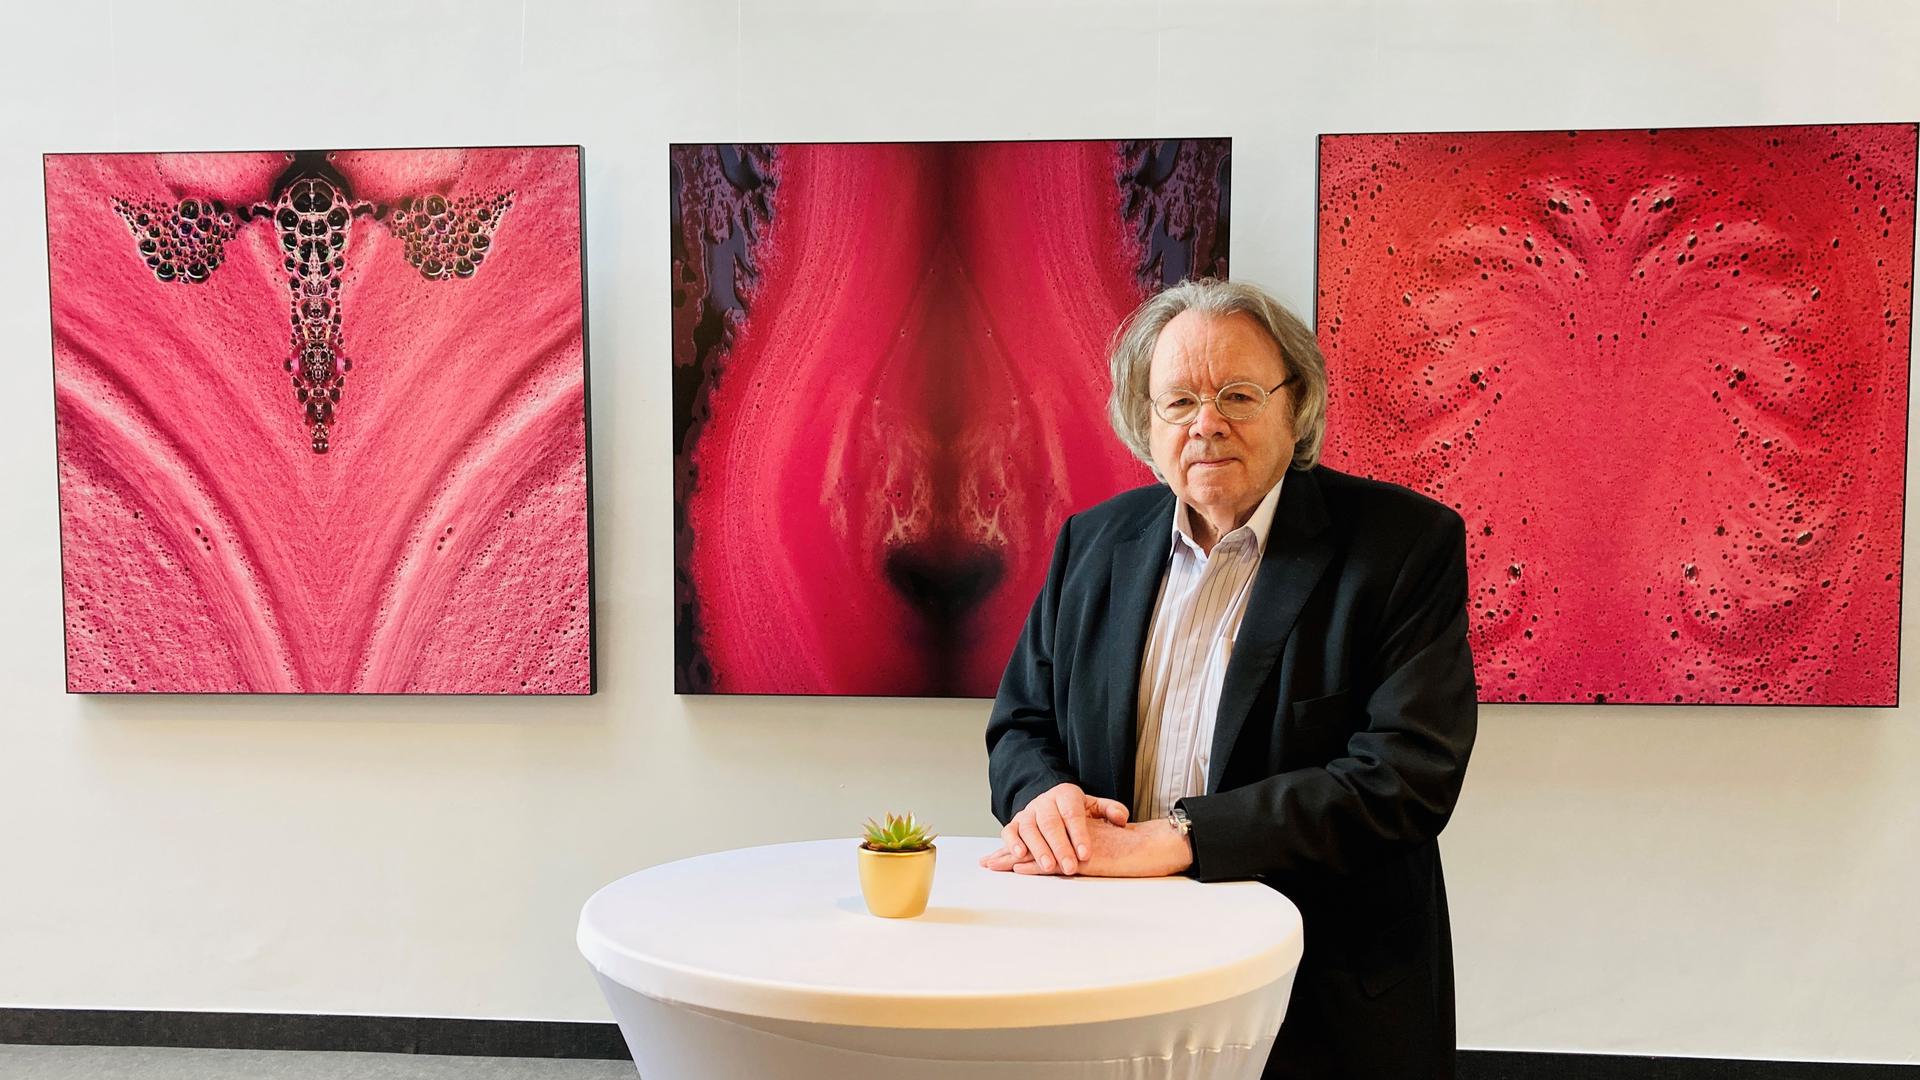 Ein Foto-Künstler ist Johann Willsberger. Der Wahl-Baden-Badener zeigt im Kongresshaus unter anderem beeindruckende Bilder von exklusiven Rotweinen beim Gären. 